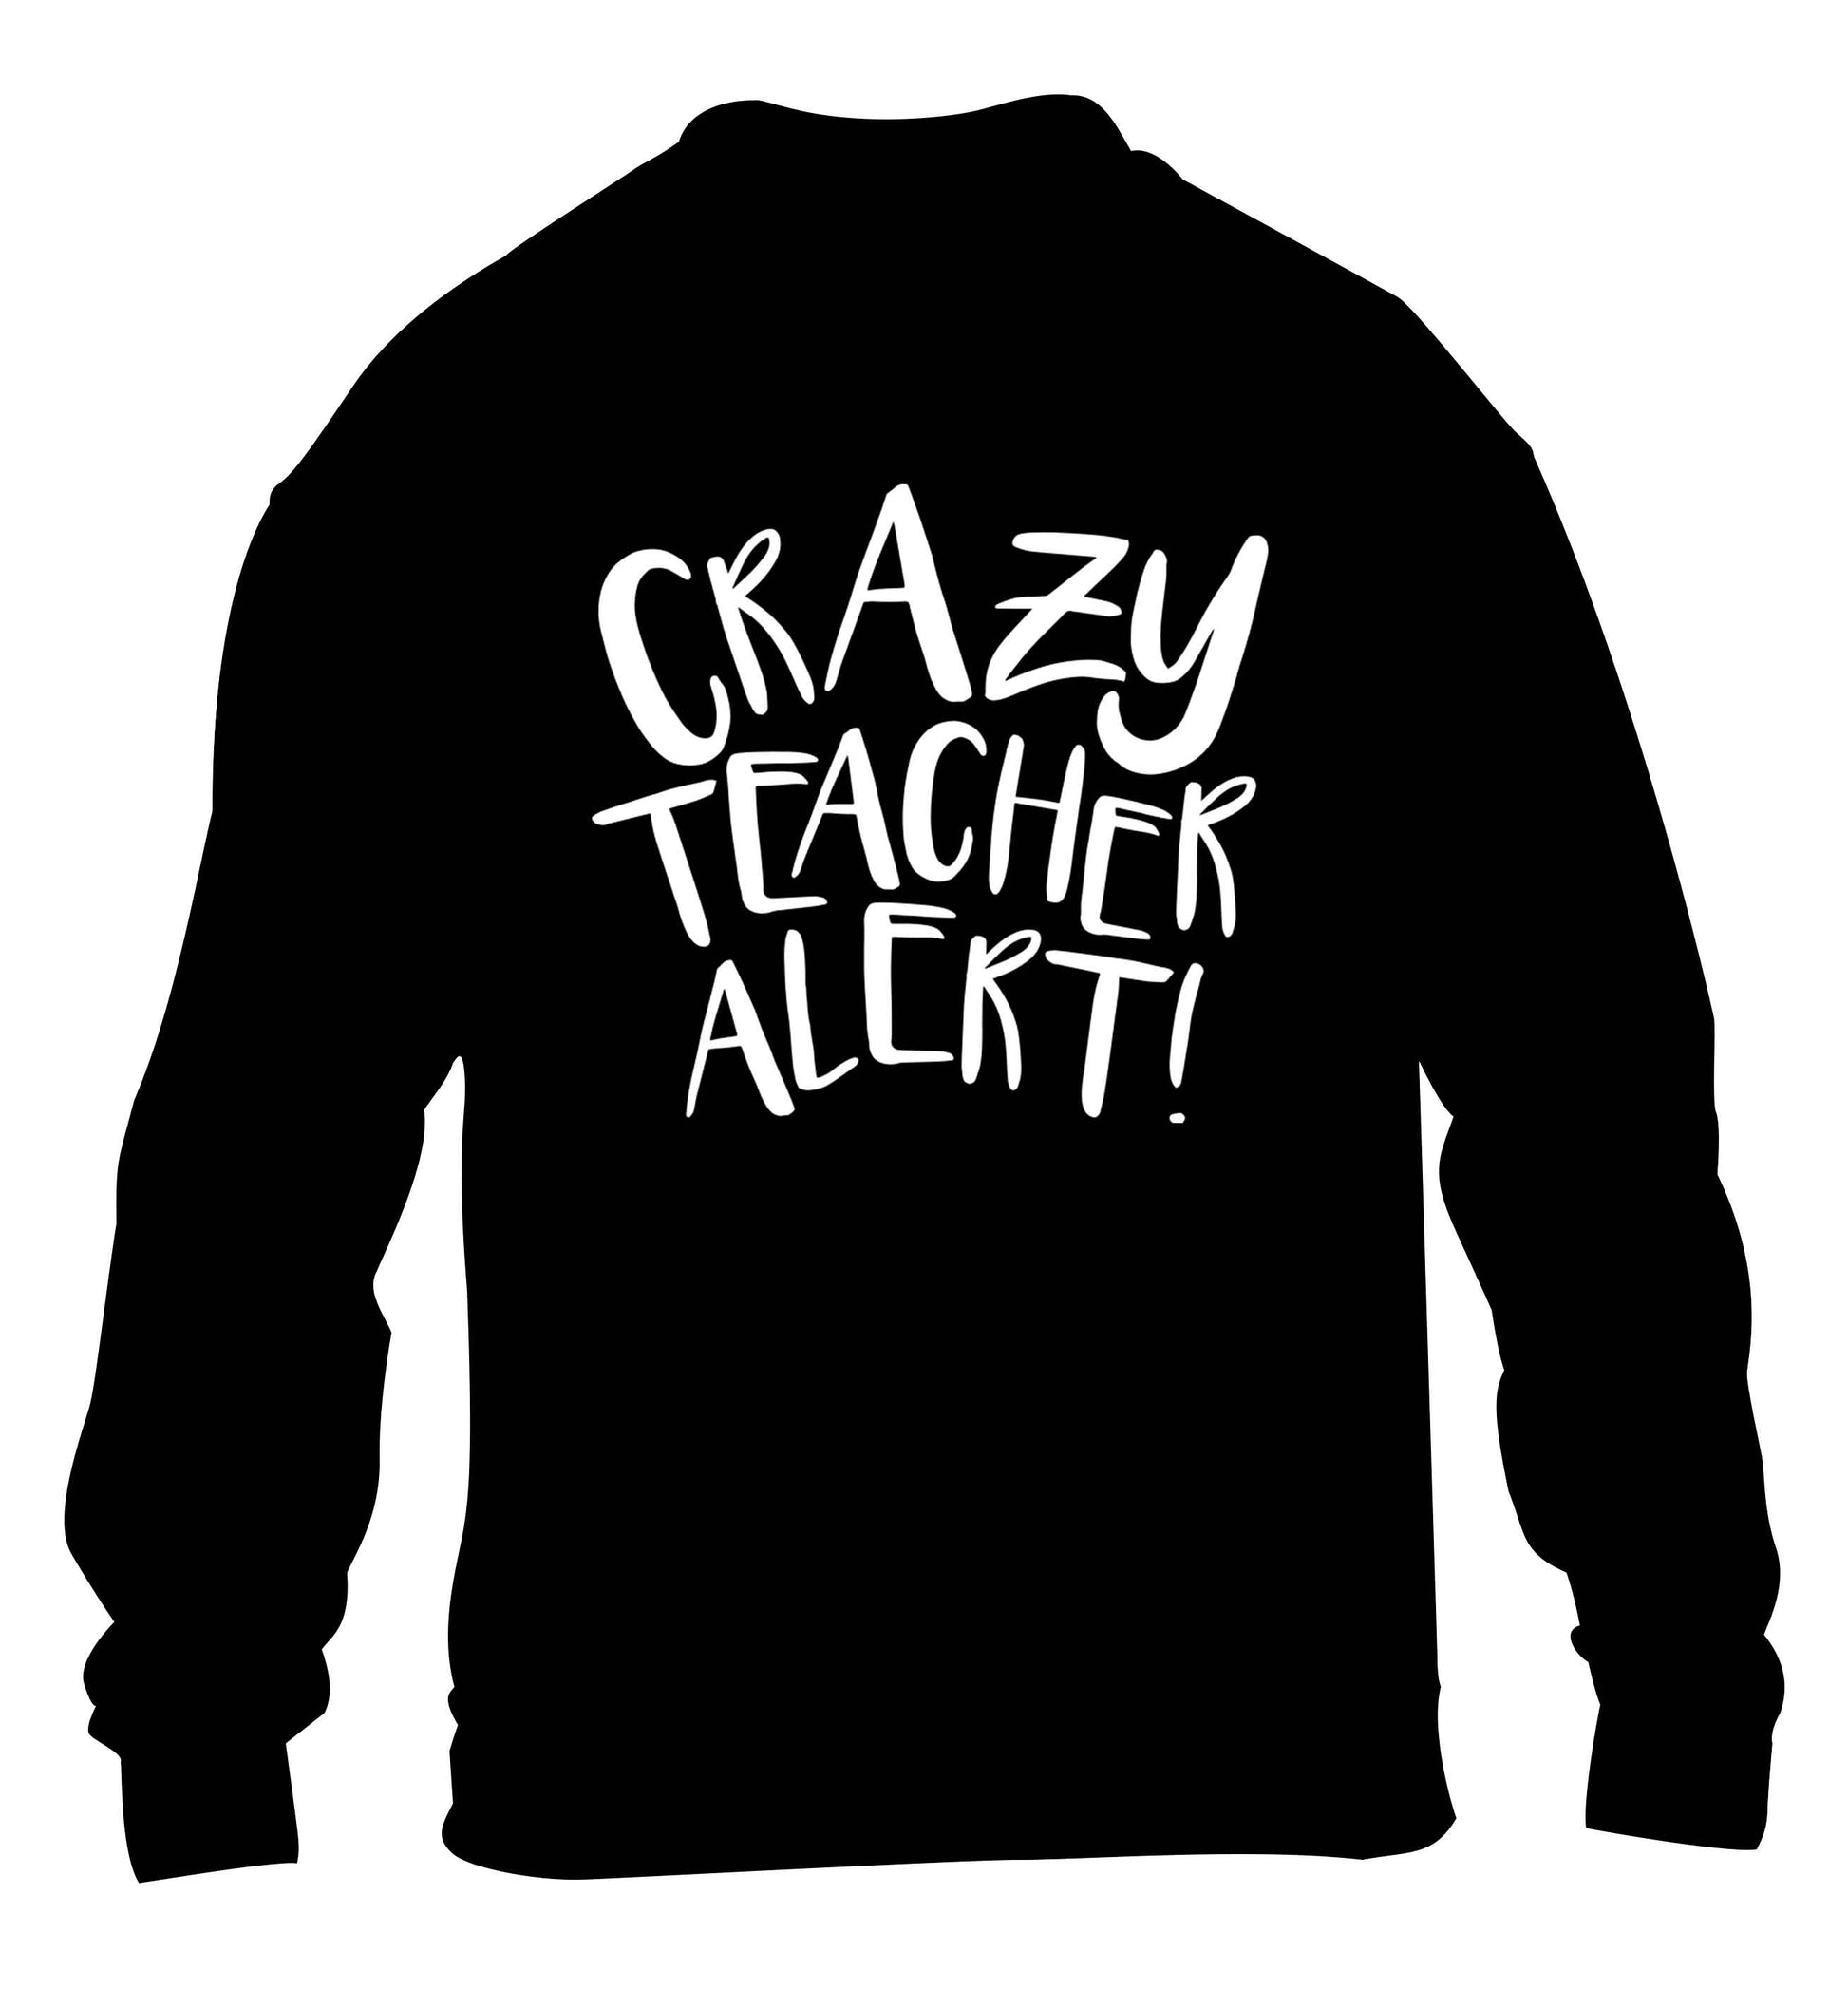 Crazy teacher alert children's black sweater 12-13 Years